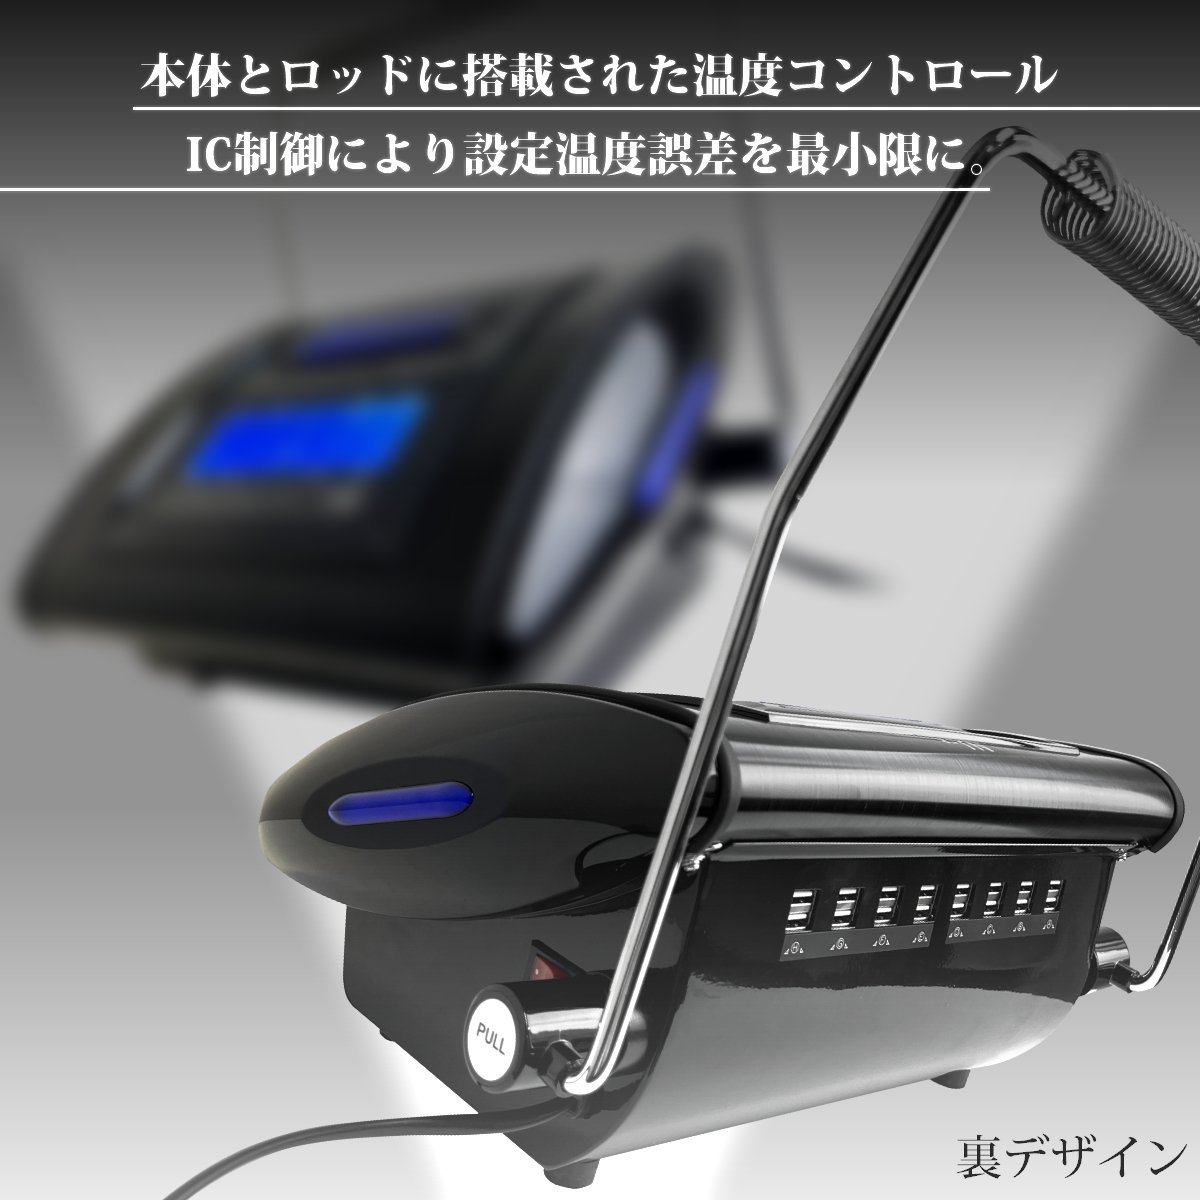 オオヒロ 大広製作所 ODIS2 EX デジタルパーマ機 ロットセット - 美容/健康